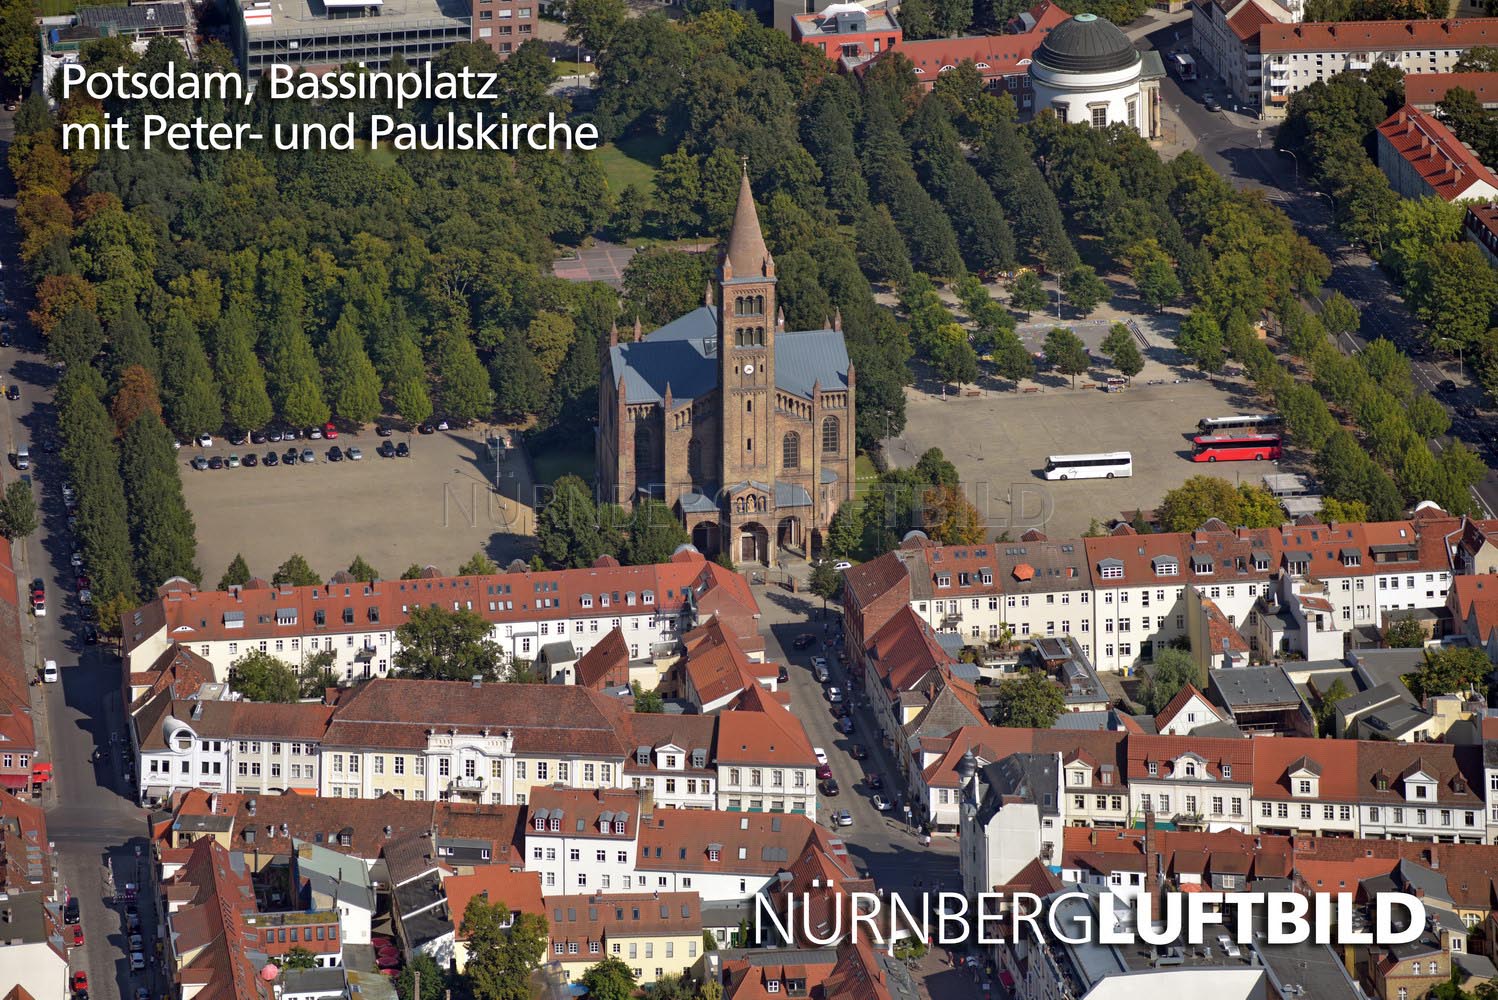 Potsdam, Bassinplatz mit Peter- und Paulskirche, Luftbild